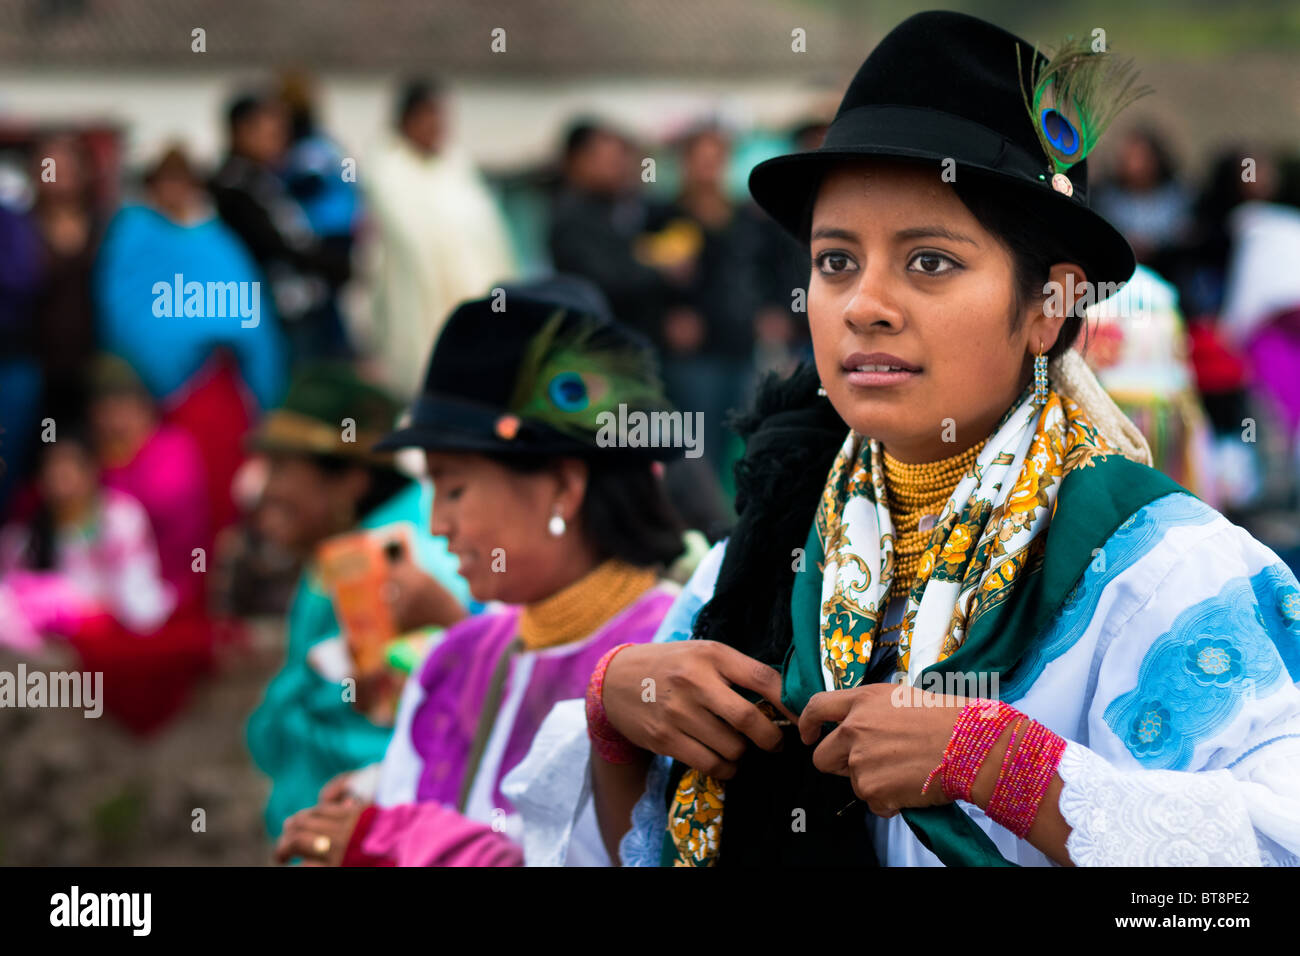 Ein Mädchen, das Tragen eines bunte Kleidung, Tänze in einer Prozession während der Inti Raymi Fest in der Provinz Pichincha, Ecuador. Stockfoto